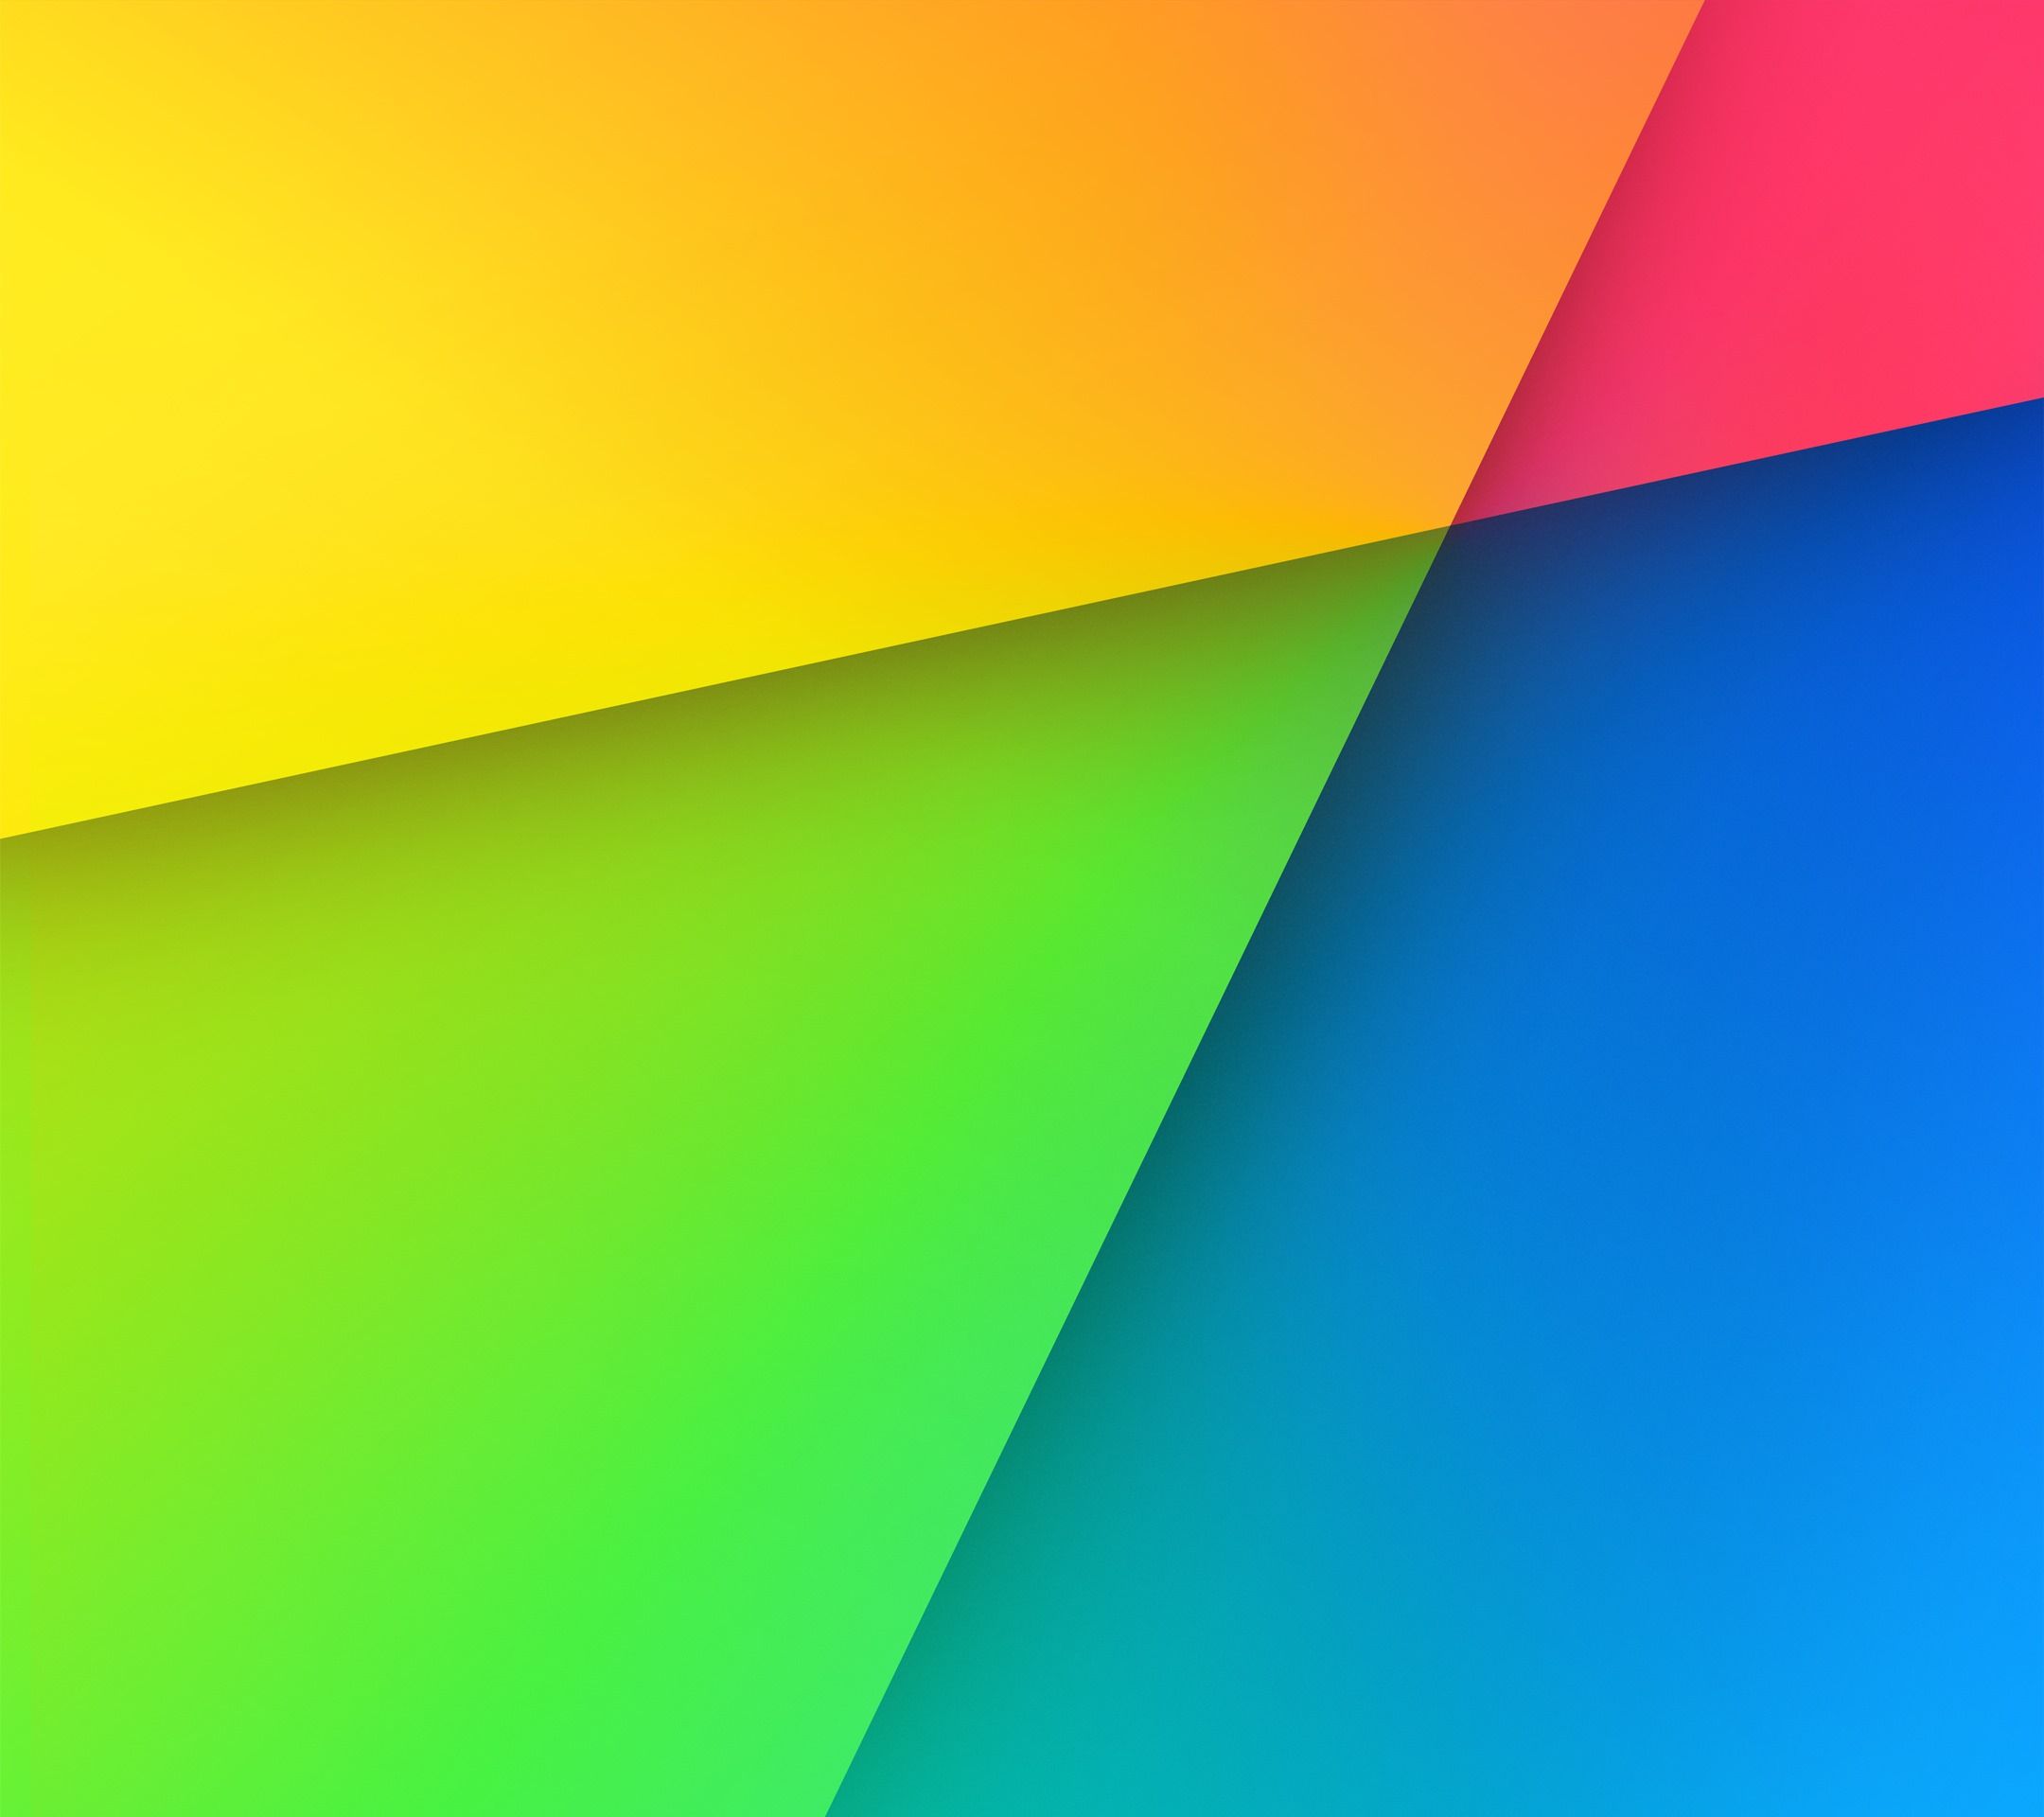 Download & Set Official Default Wallpapers of Nexus 7 2013 in